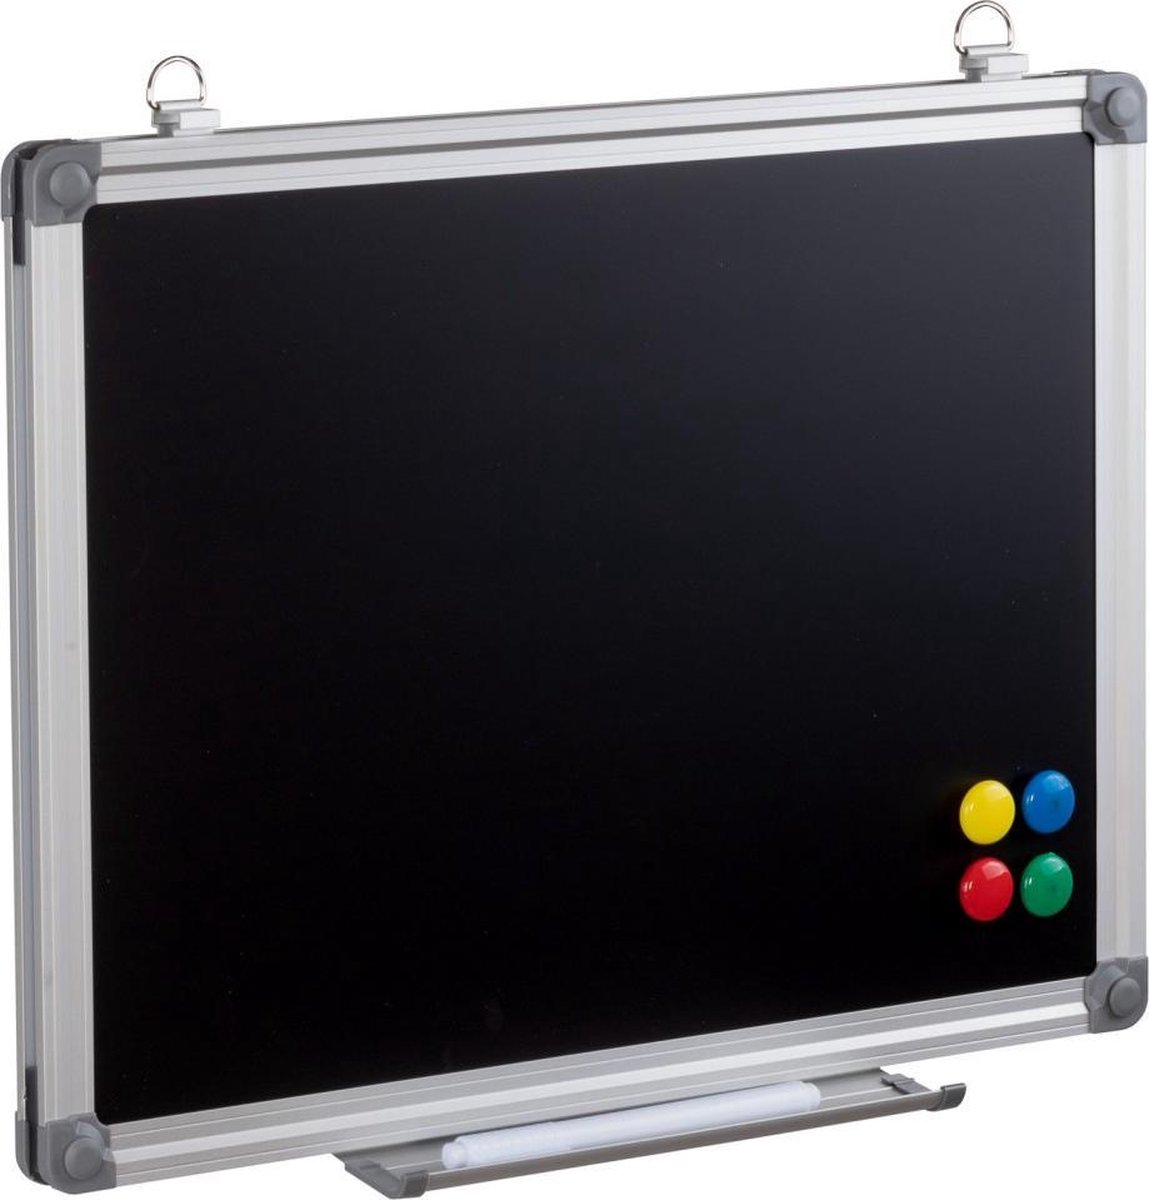 Magnetisch Krijtbord Met Lijst - Hangend Blackboard - Wand/Muur Chalkboard - Krijt Schrijfbord/Planbord/Memobord - Kalkbord Voor Keuken/Kantoor/Horeca - Inclusief Afleggoot & Magneten - 30x40 CM Groot - Merkloos